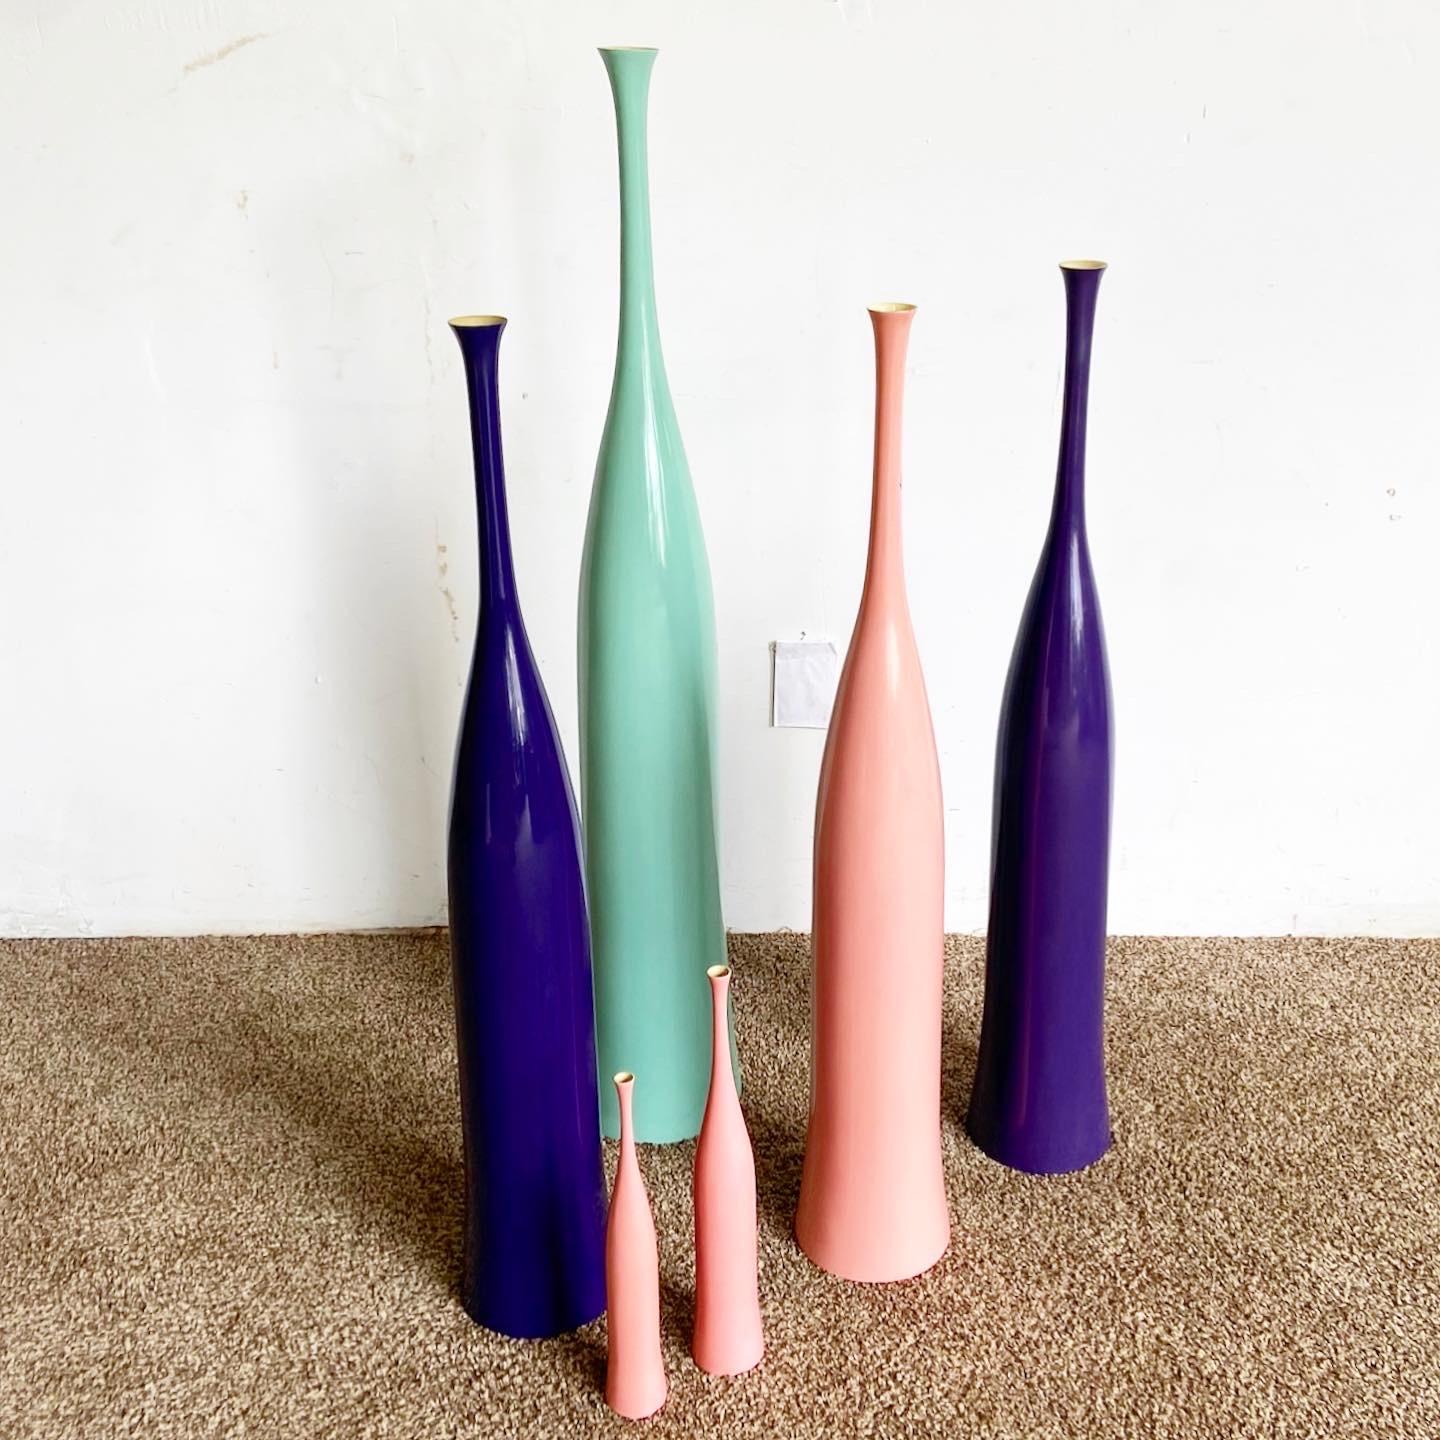 Bringen Sie Farbe in Ihre Einrichtung mit unserem Set aus sechs postmodernen Vasen von Oggetti in den Farben Rosa, Lila und Teal.

Set mit sechs postmodernen Vasen von Oggetti
In auffälligem Rosa, Lila und Grüntönen gehalten
Unterschiedliche Größen